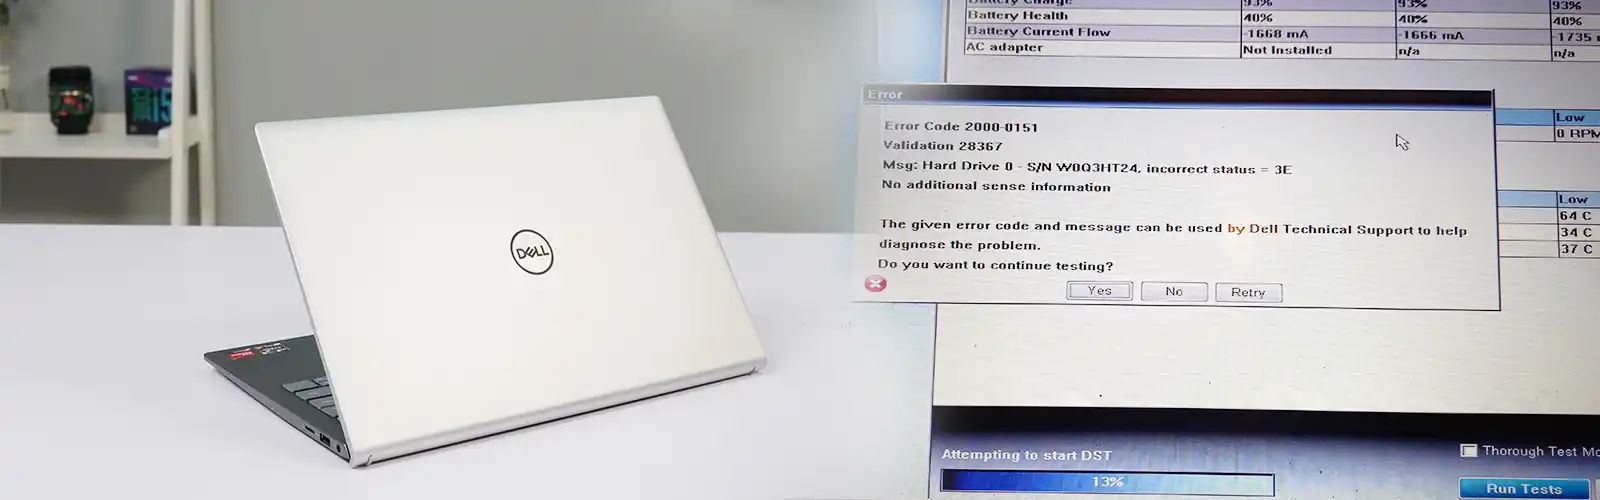 Dell Error Code 2000-0151